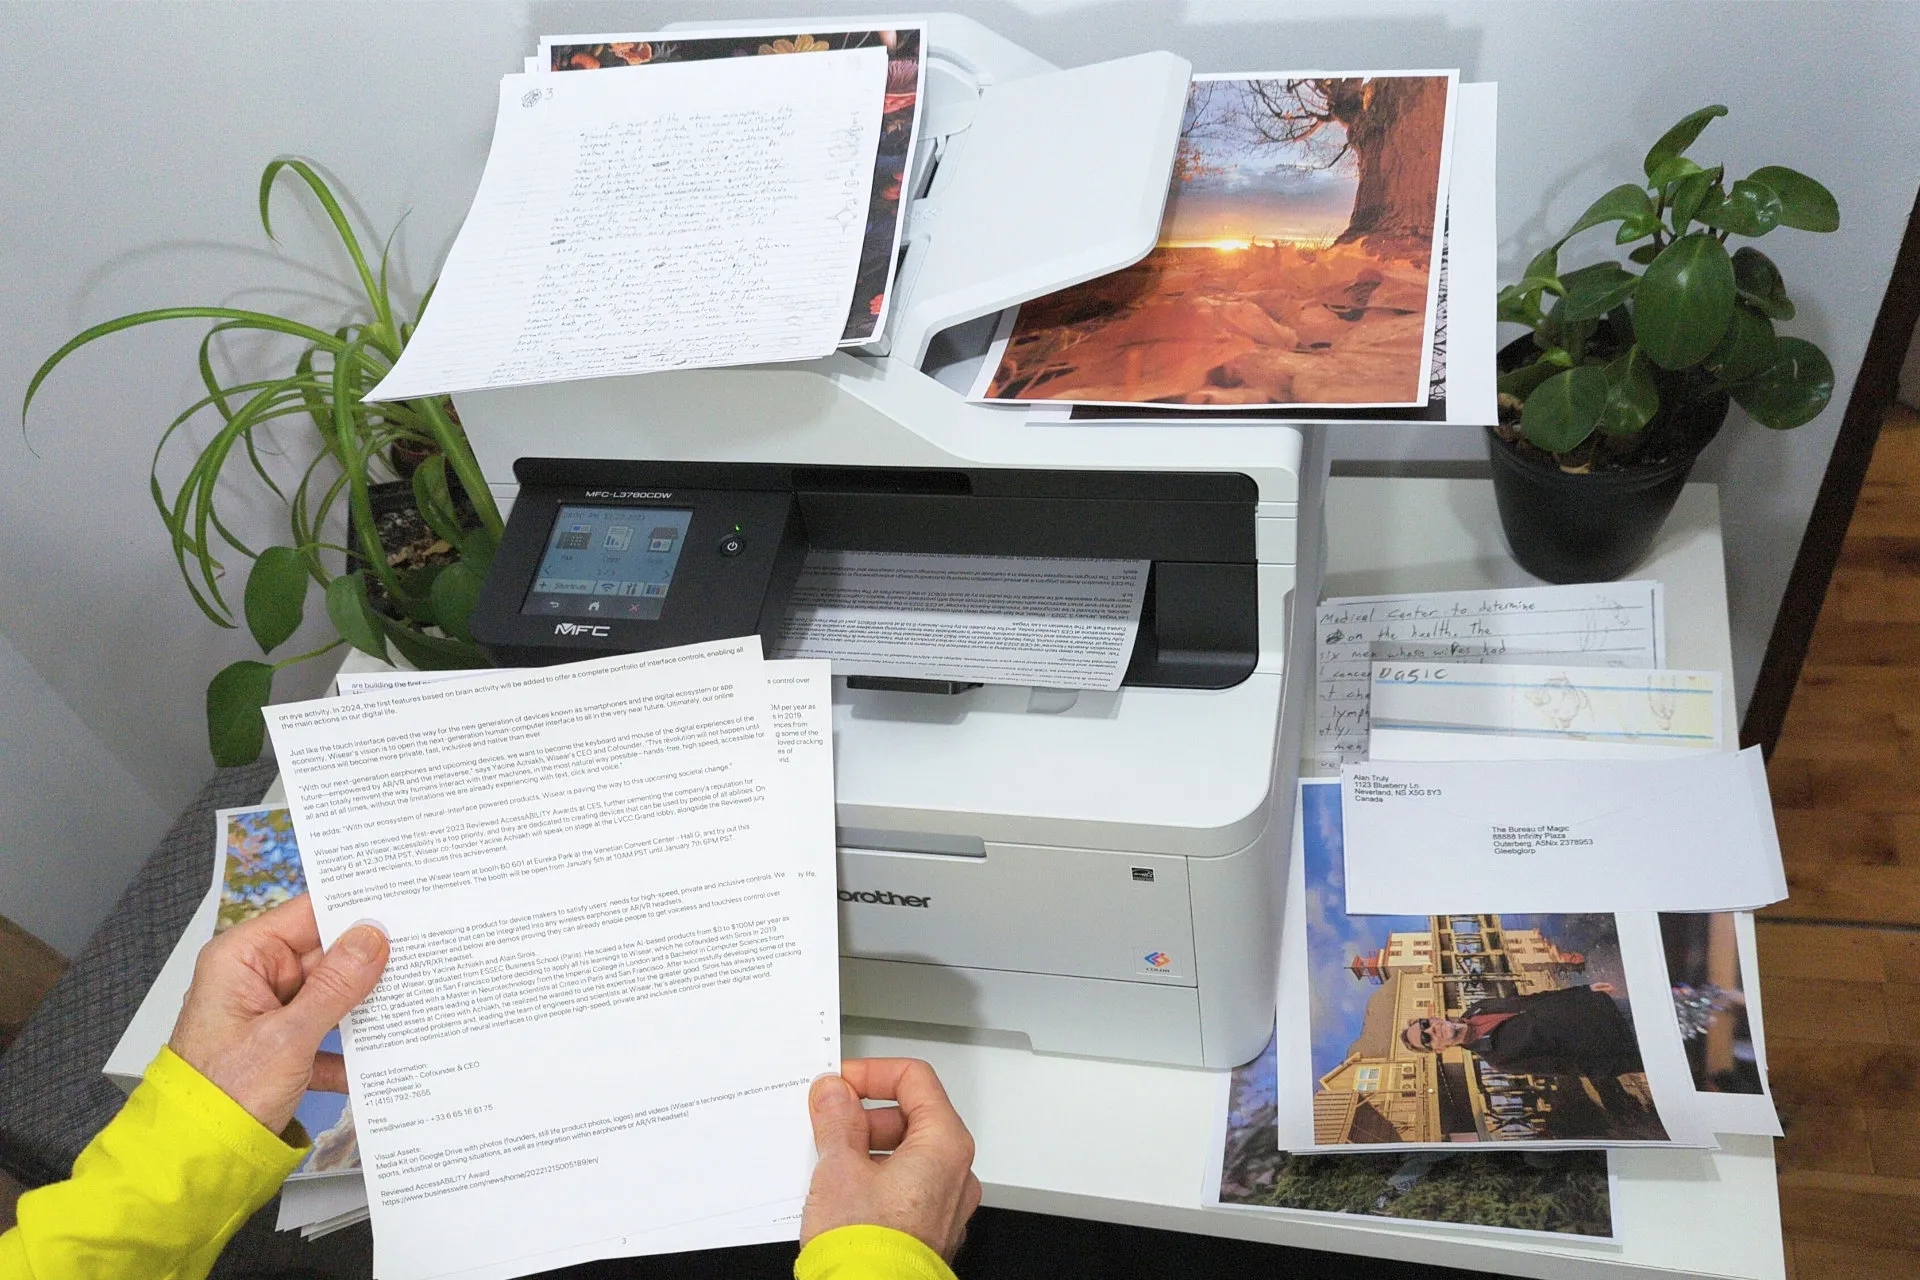 Принтер Brother MFC-L3780 CDW цветного лазера окружен картинами, черно-белыми и цветными документами.